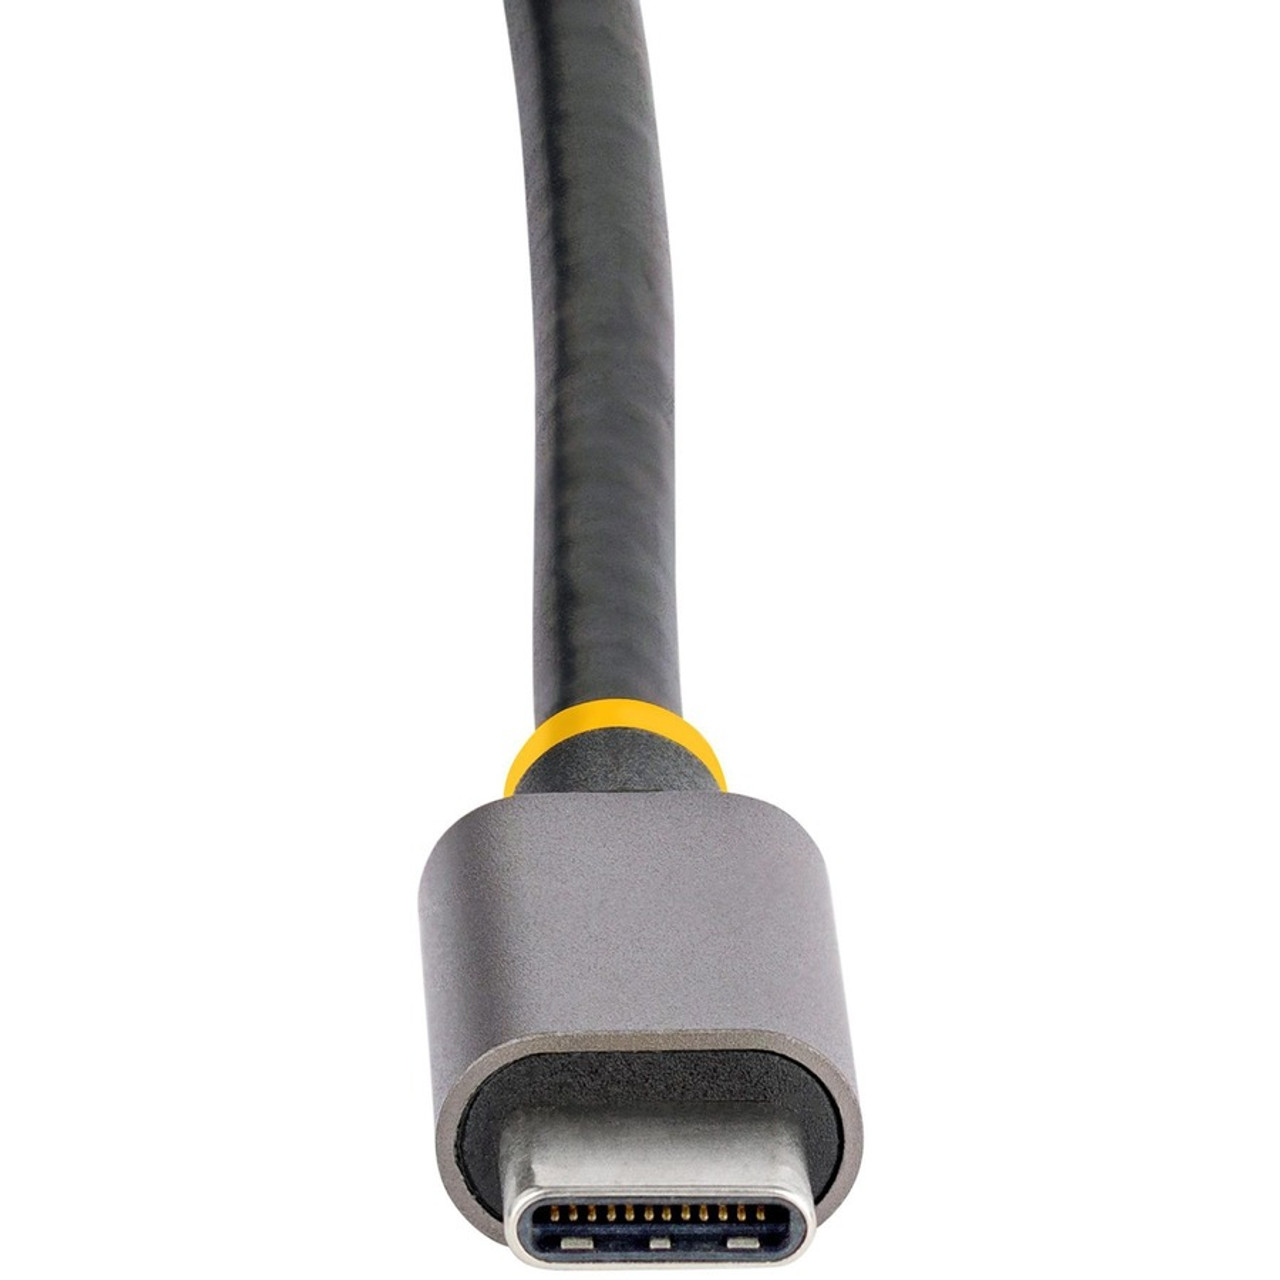  StarTech.com USB C Multiport Adapter 4K 60Hz HDMI